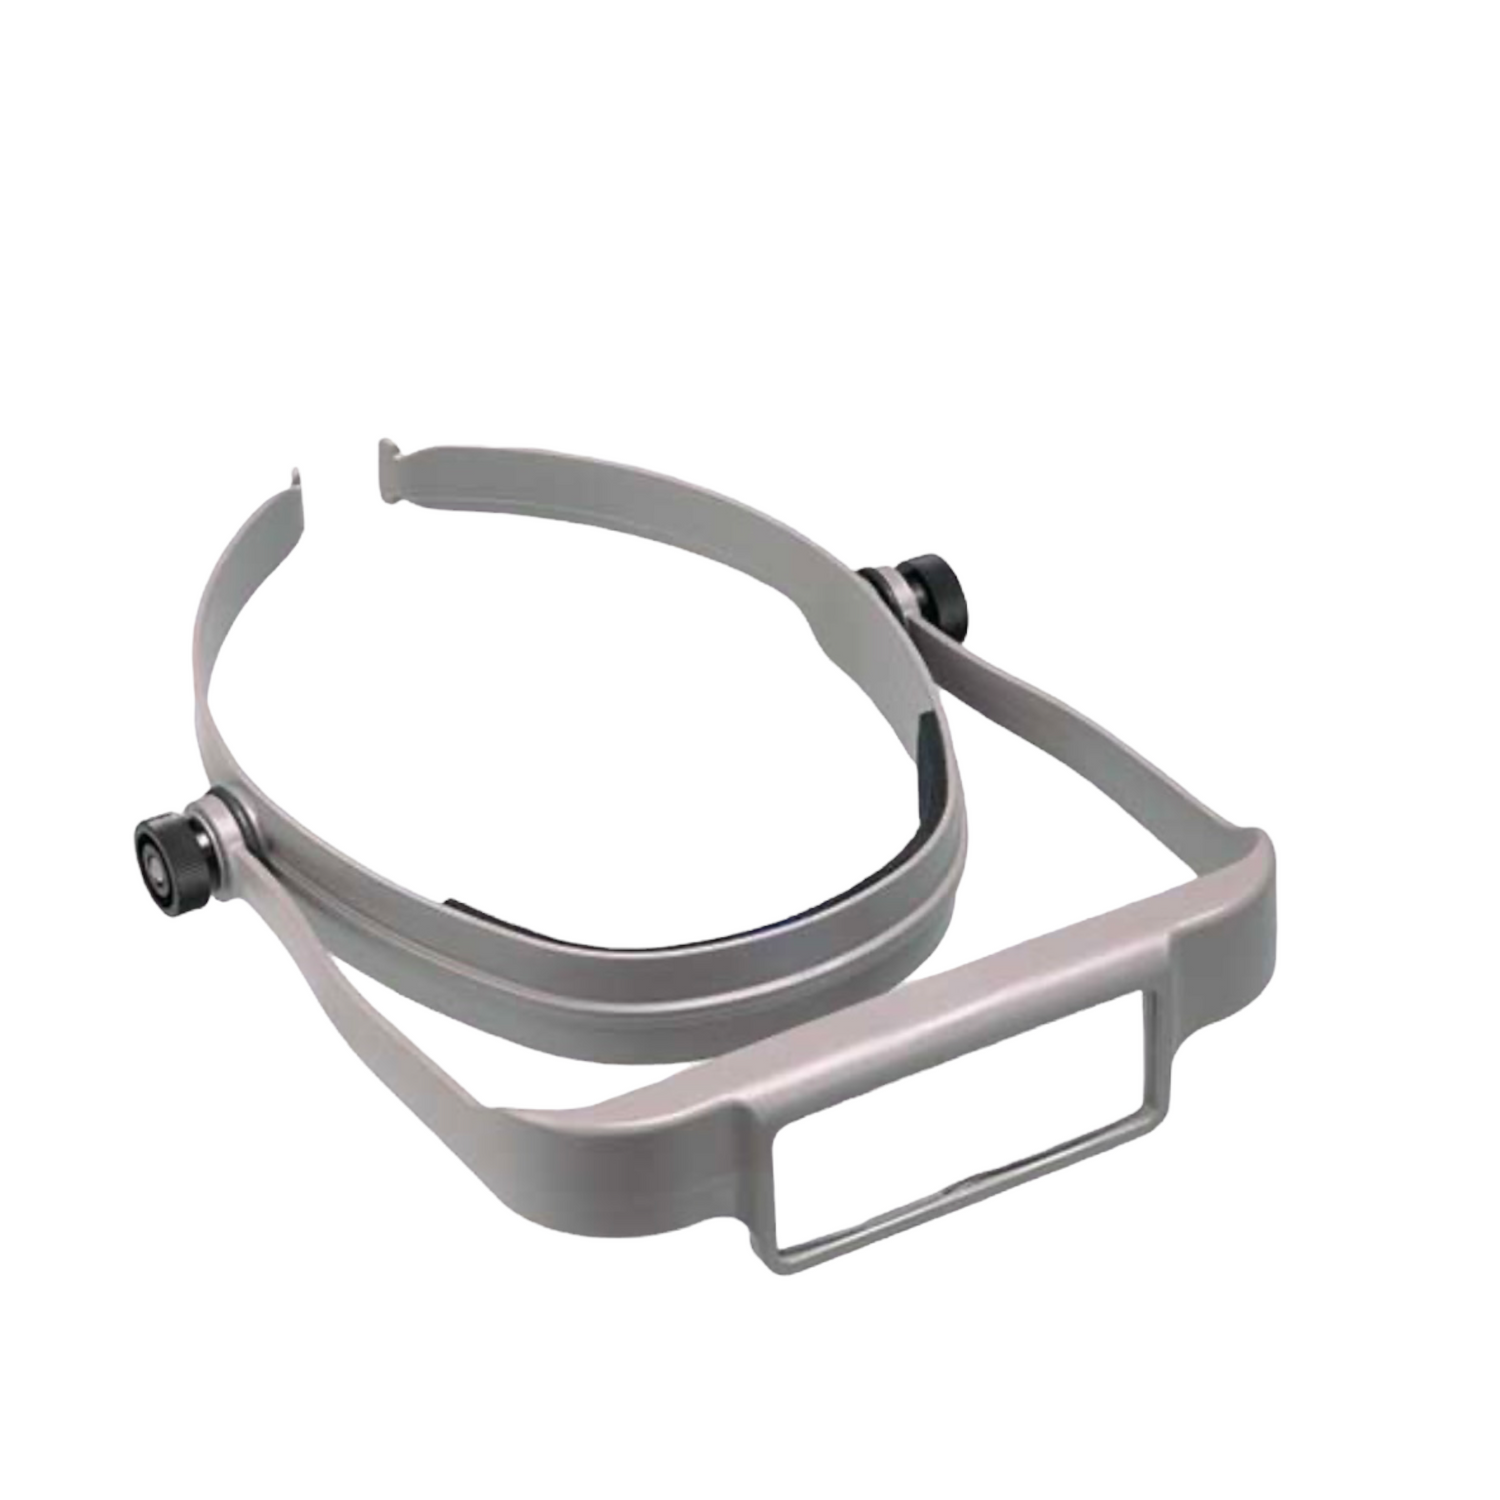 Donegan OptiSight Visor - Magnifying Glasses